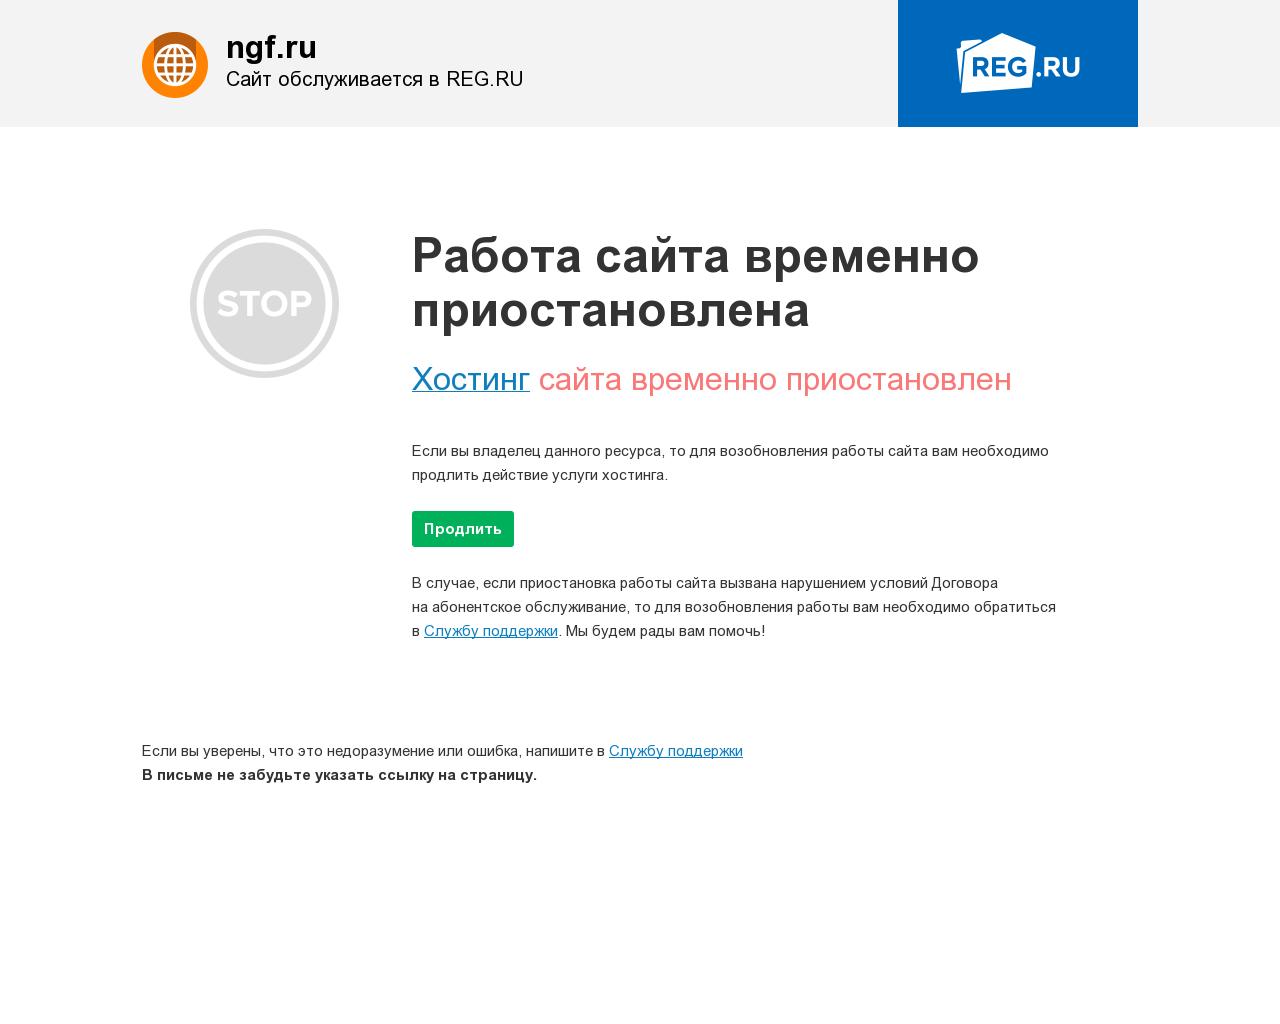 Изображение сайта ngf.ru в разрешении 1280x1024